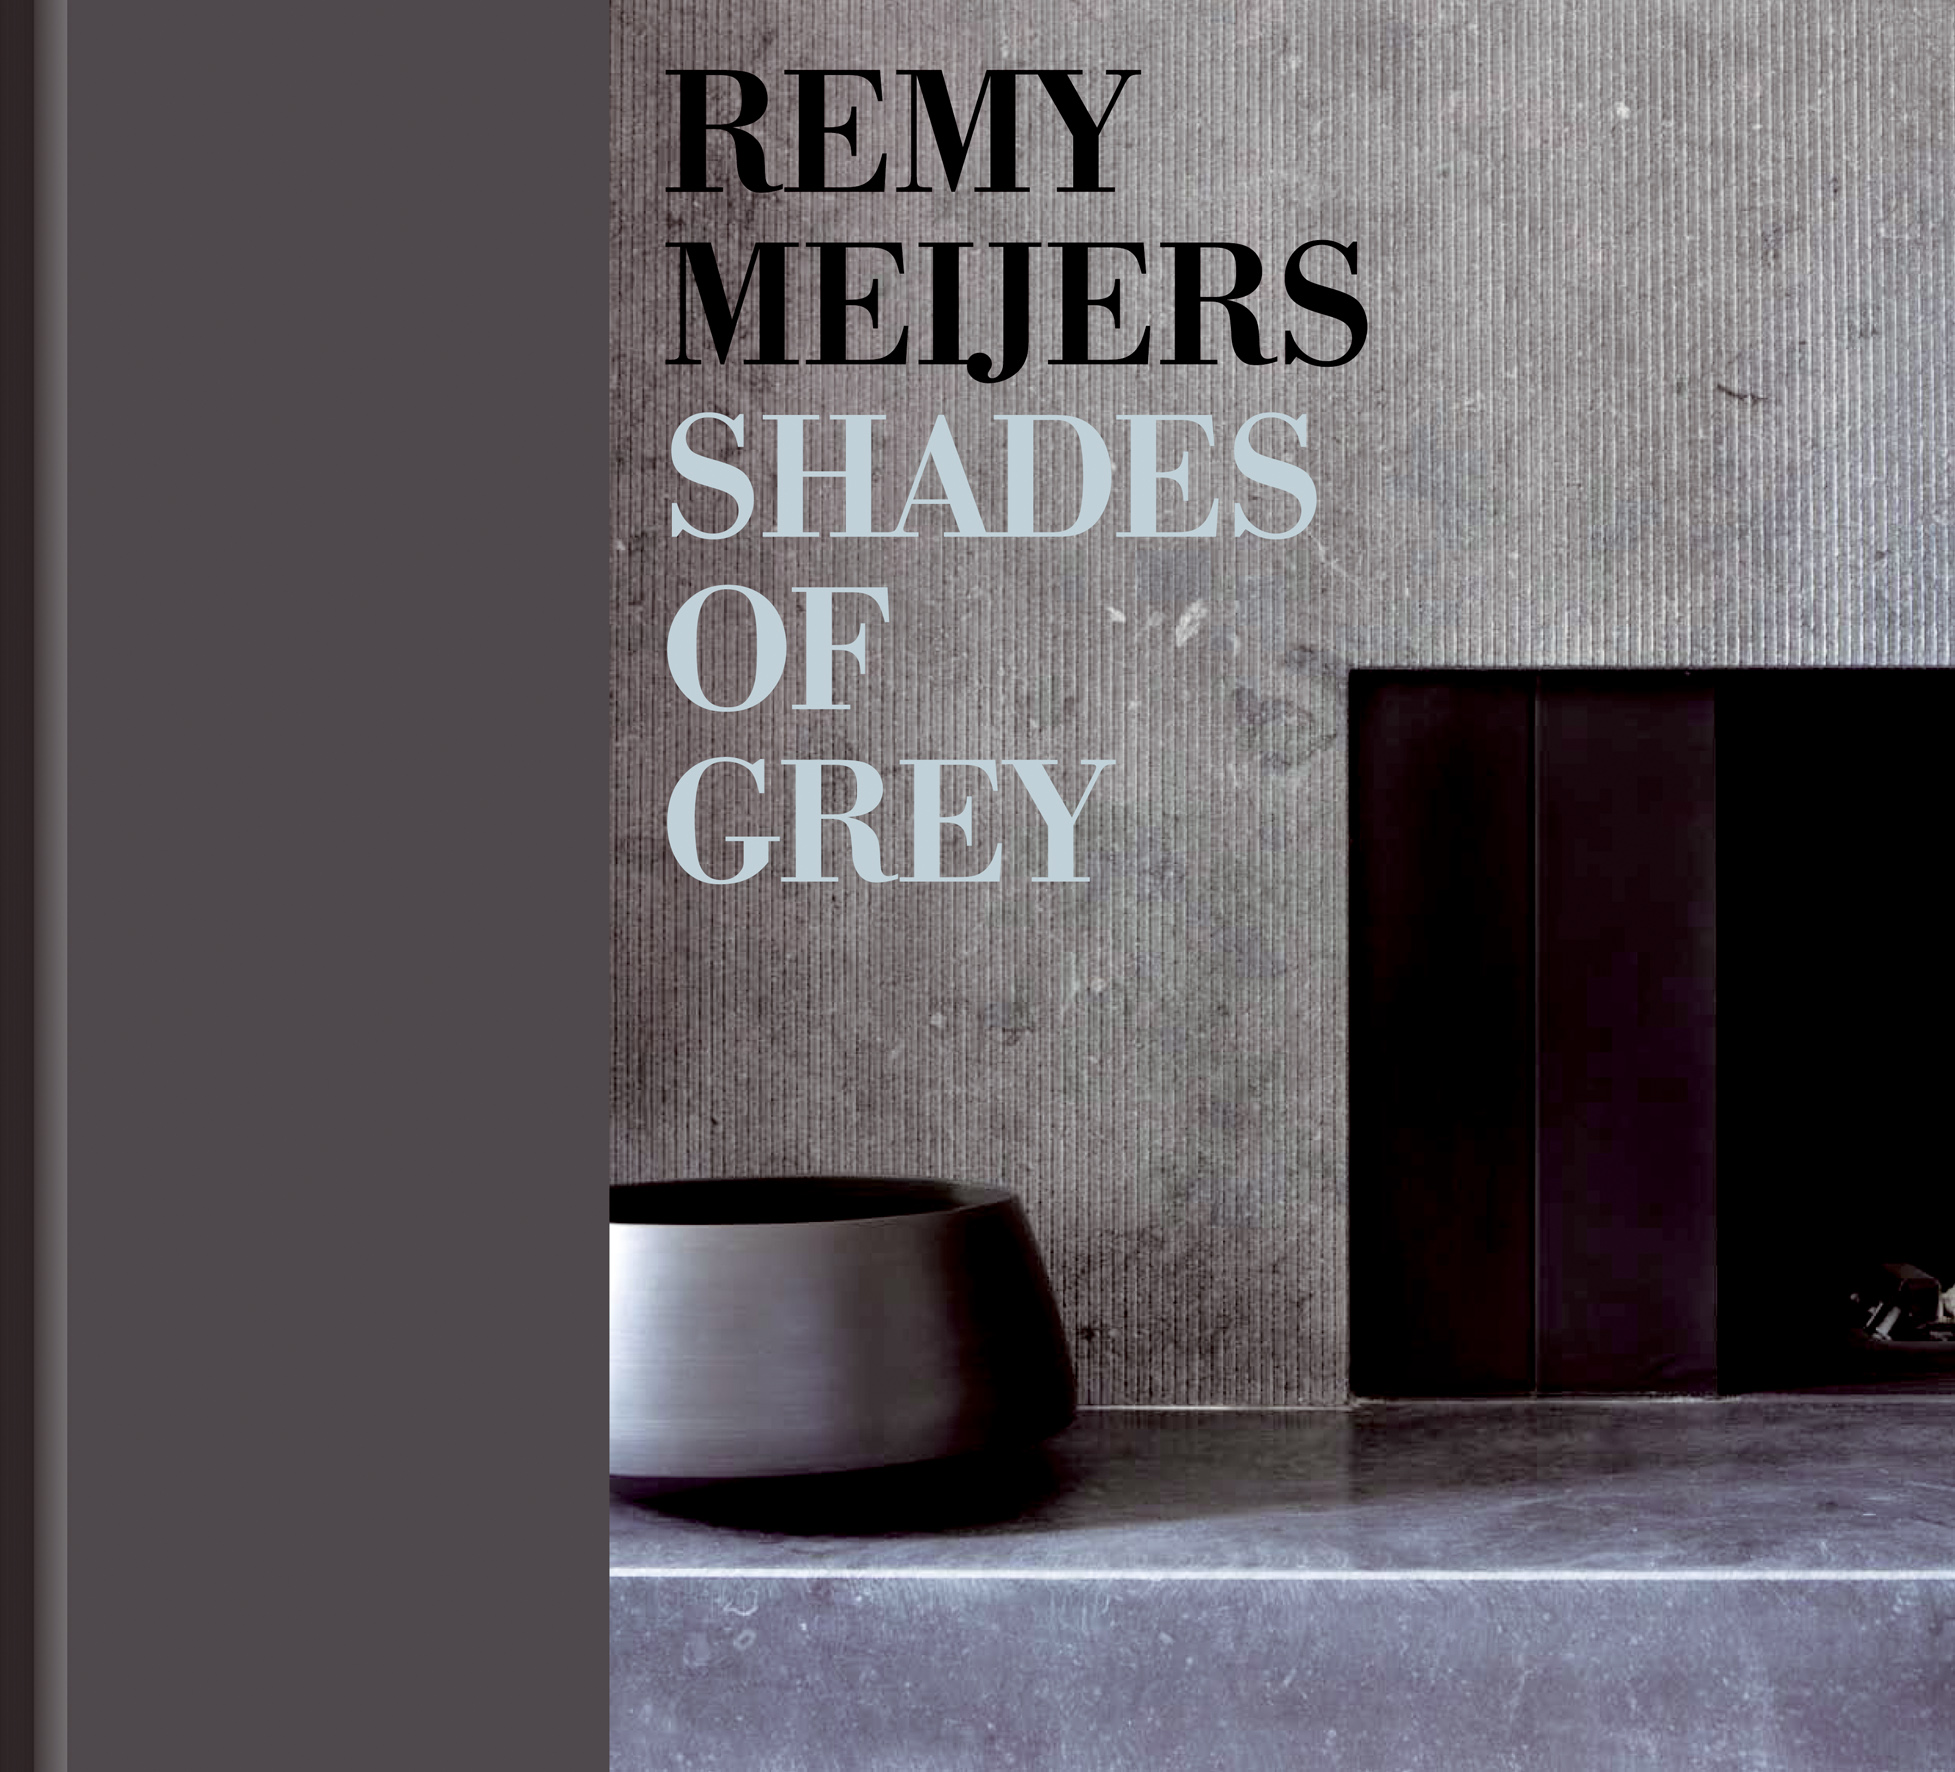 Shades of grey – De visie van interieurarchitect Remy Meijers in beeld